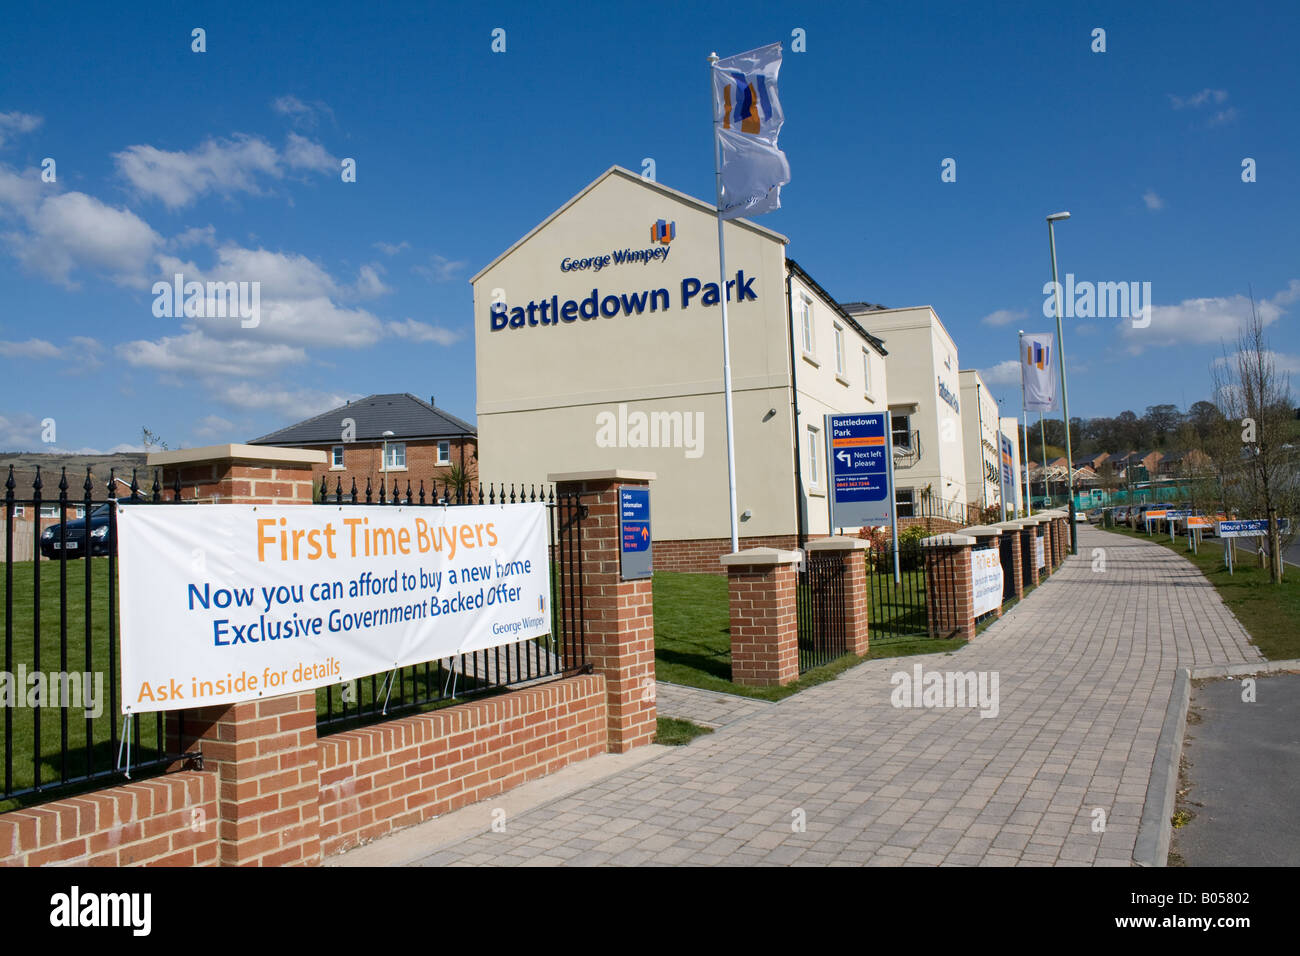 Nuovi acquirenti per la prima volta le proprietà Wimpey Battledown Park Cheltenham Regno Unito Foto Stock